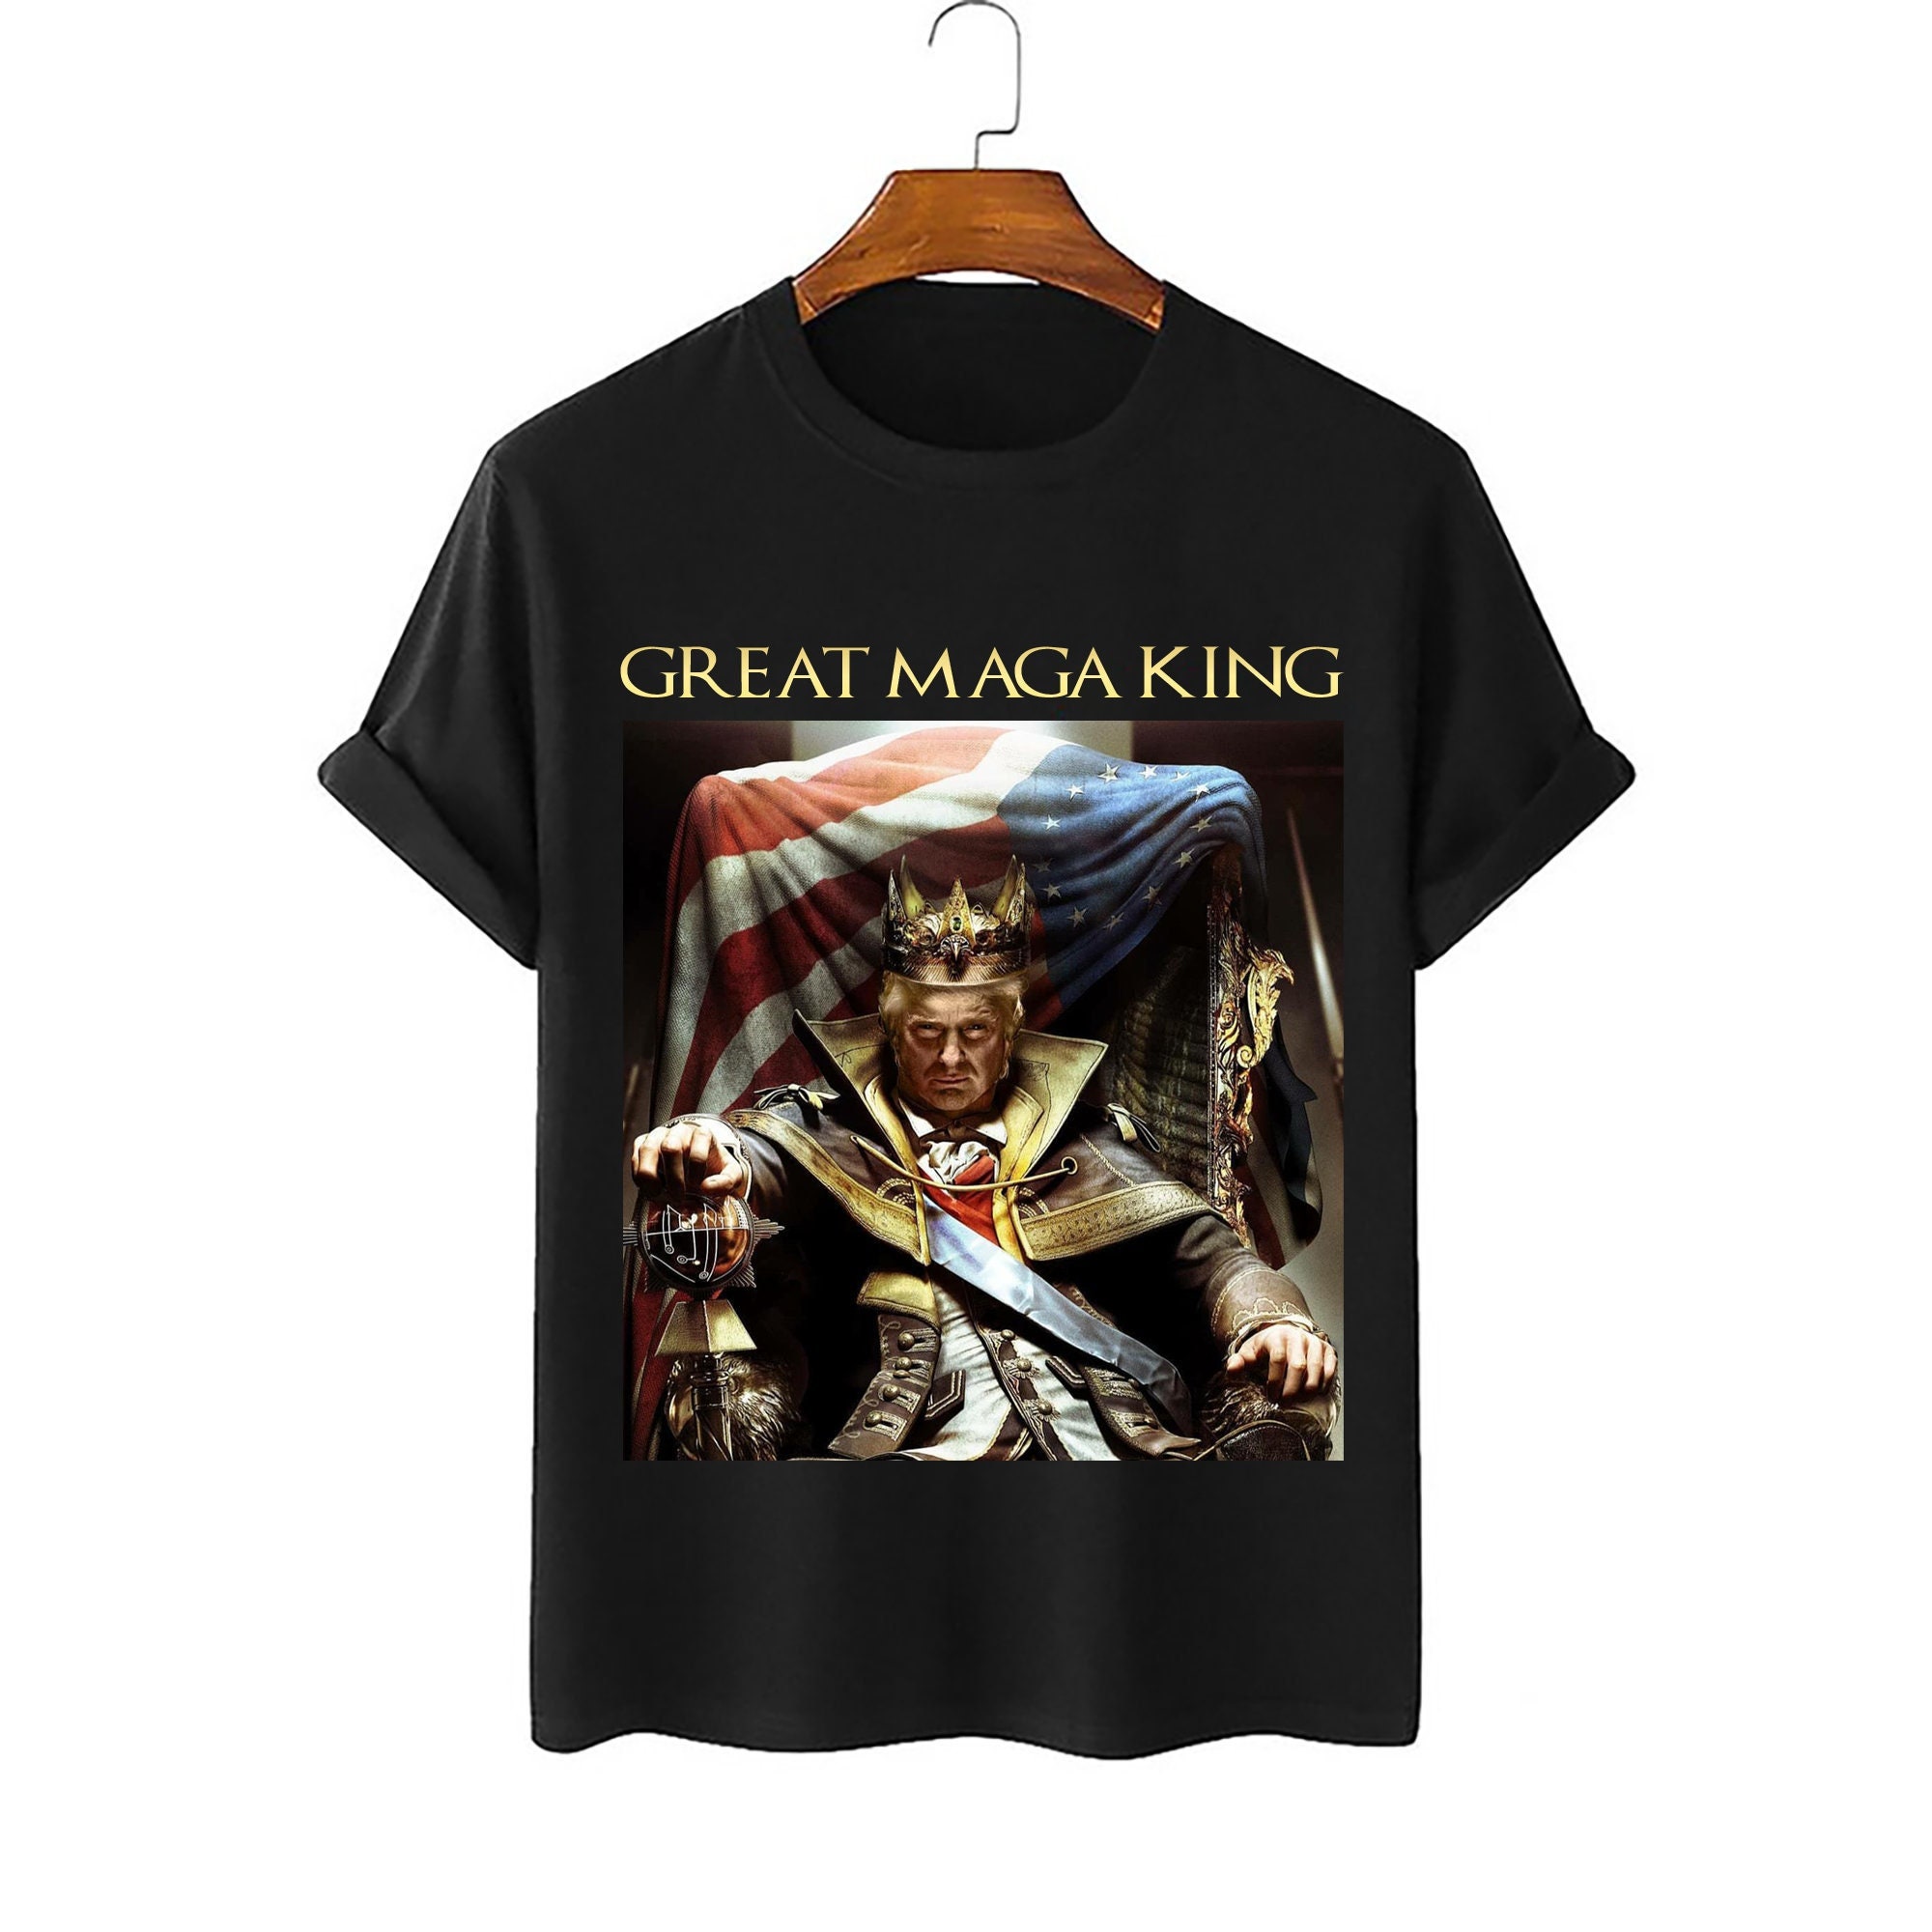 Great MAGA King Shirt